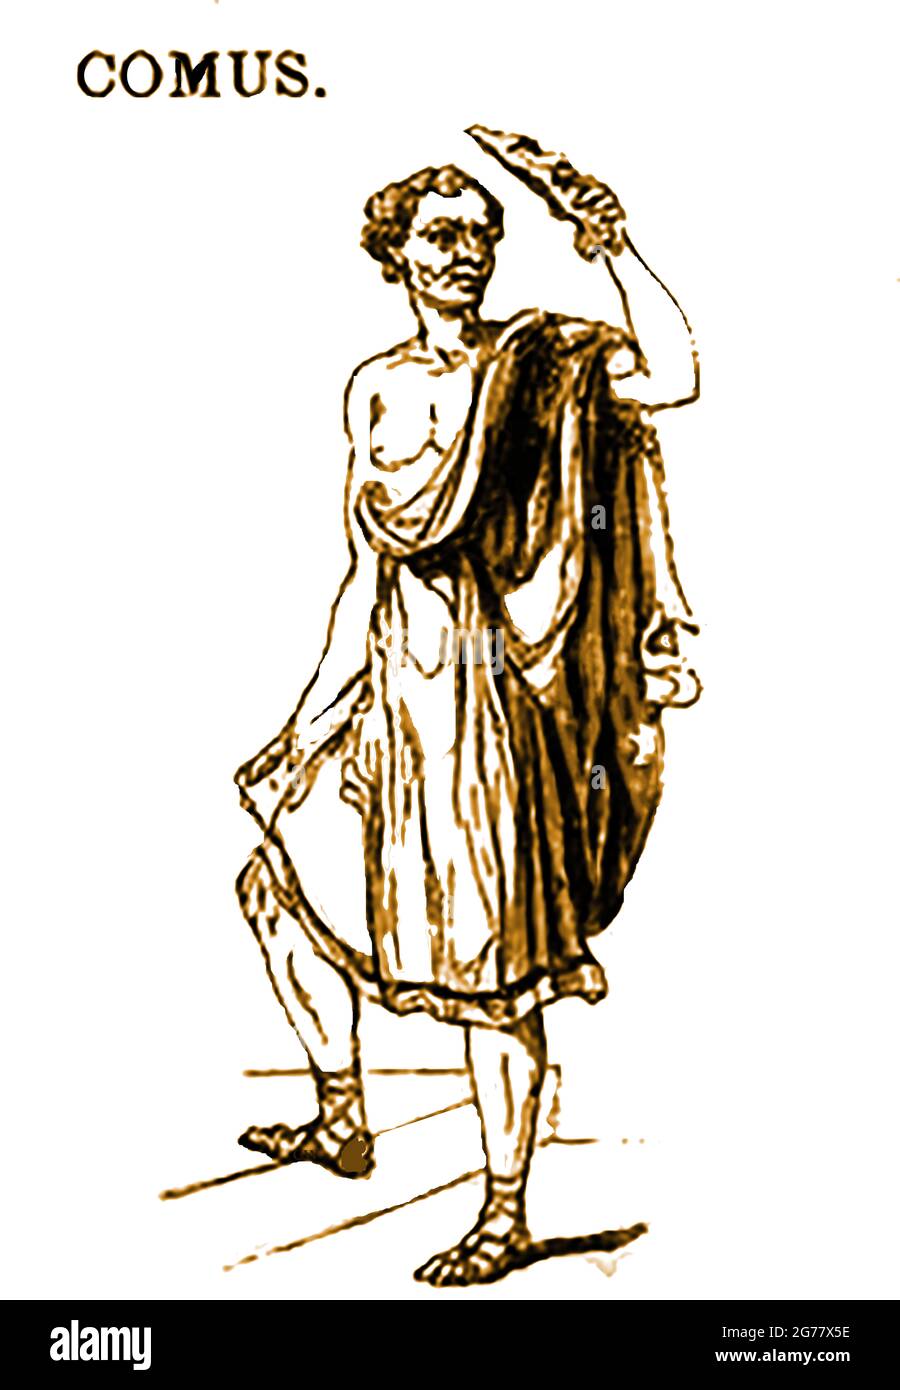 Une représentation en 1839 de la figure mythologique grecque Comus (Κῶμος) le dieu ivre de la festivité, des revels et des activités nocturnes. S'il est représenté comme une jeunesse aigée ou comme un satyr enfant, il symbolise l'anarchie et le chaos. COMUS peut également être décrit comme une ivre paralytique. Il est essentiellement un dieu d'excès et est souvent montré (comme ici et parfois avec une couronne de fleurs sur sa tête) portant un flambeau qui est tombé. Il a des liens (mais pas directement) avec d'autres dieux charnels ou ivres comme Pan et Dionysos. Banque D'Images